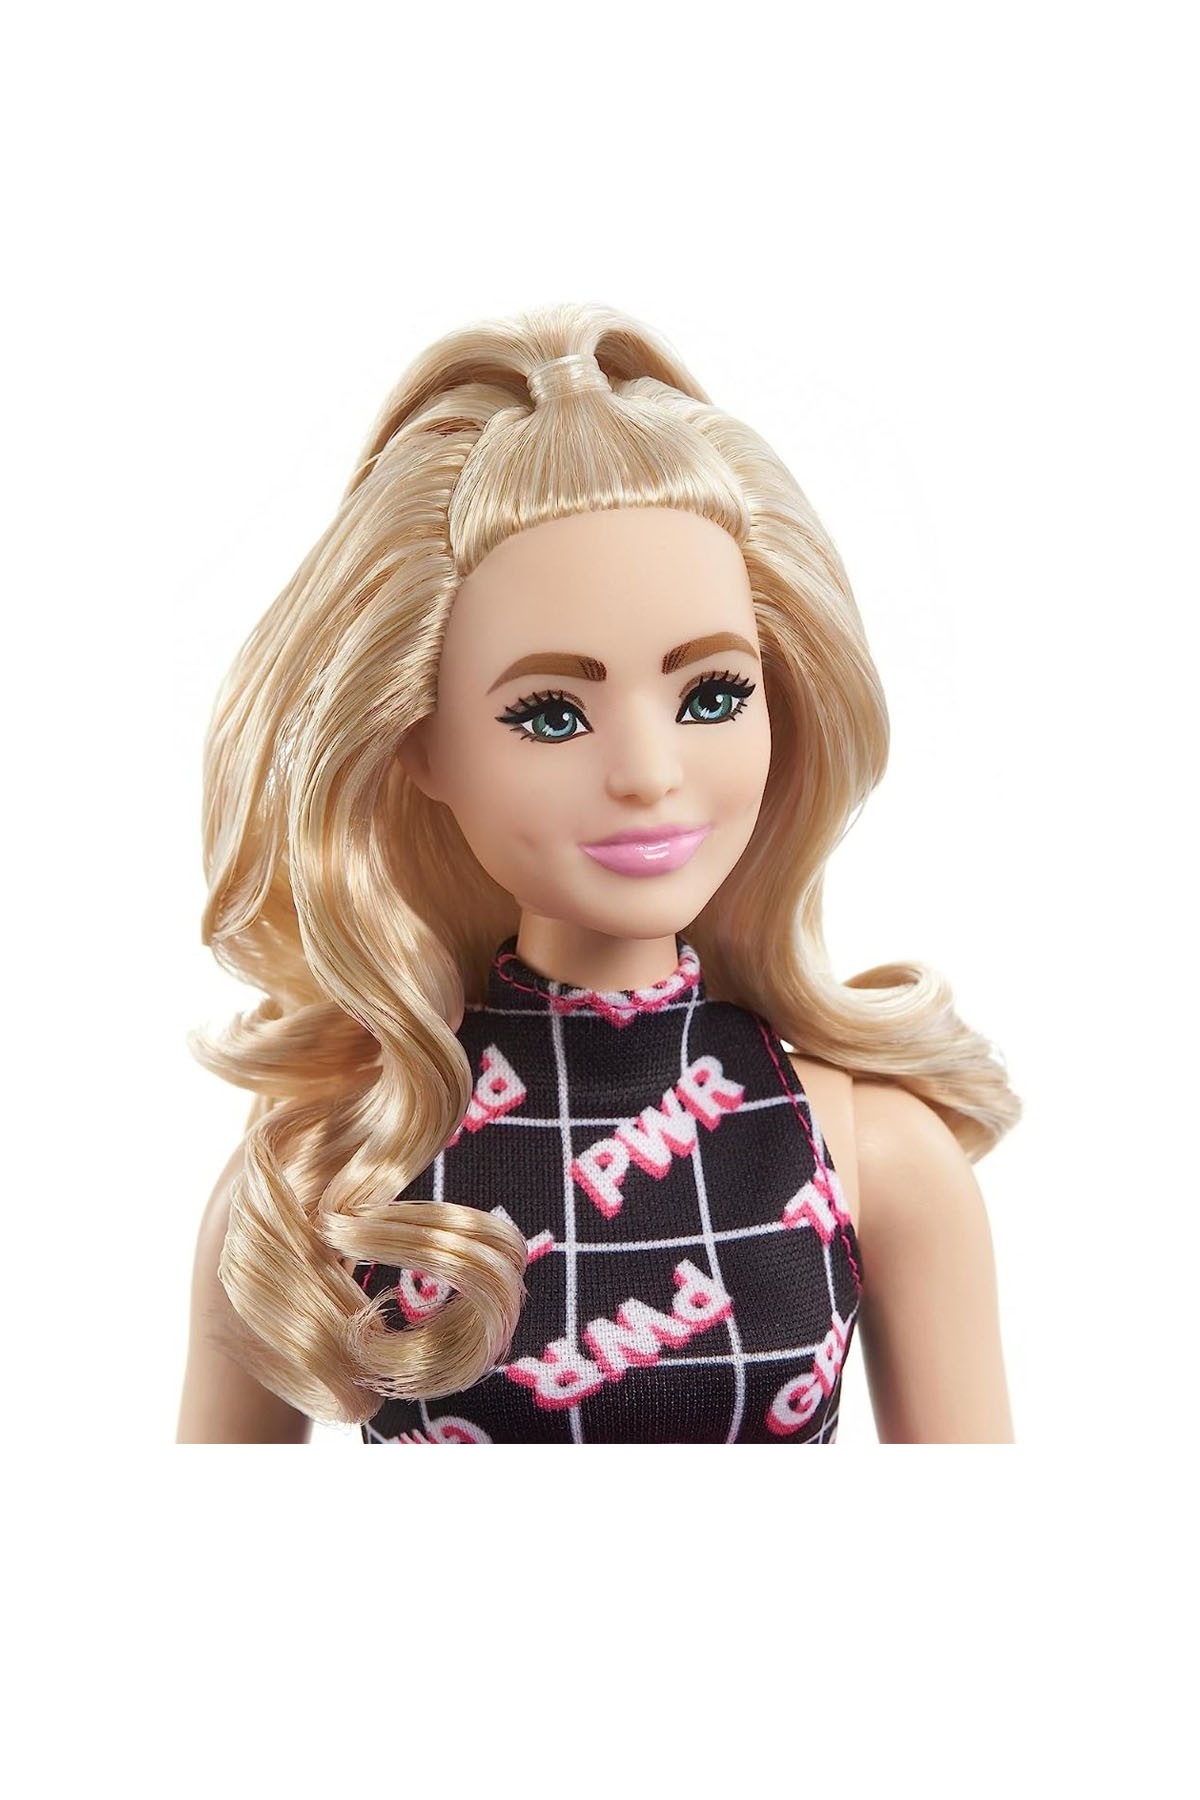 Barbie Büyüleyici Parti Bebekleri (Fashionistas) HPF78